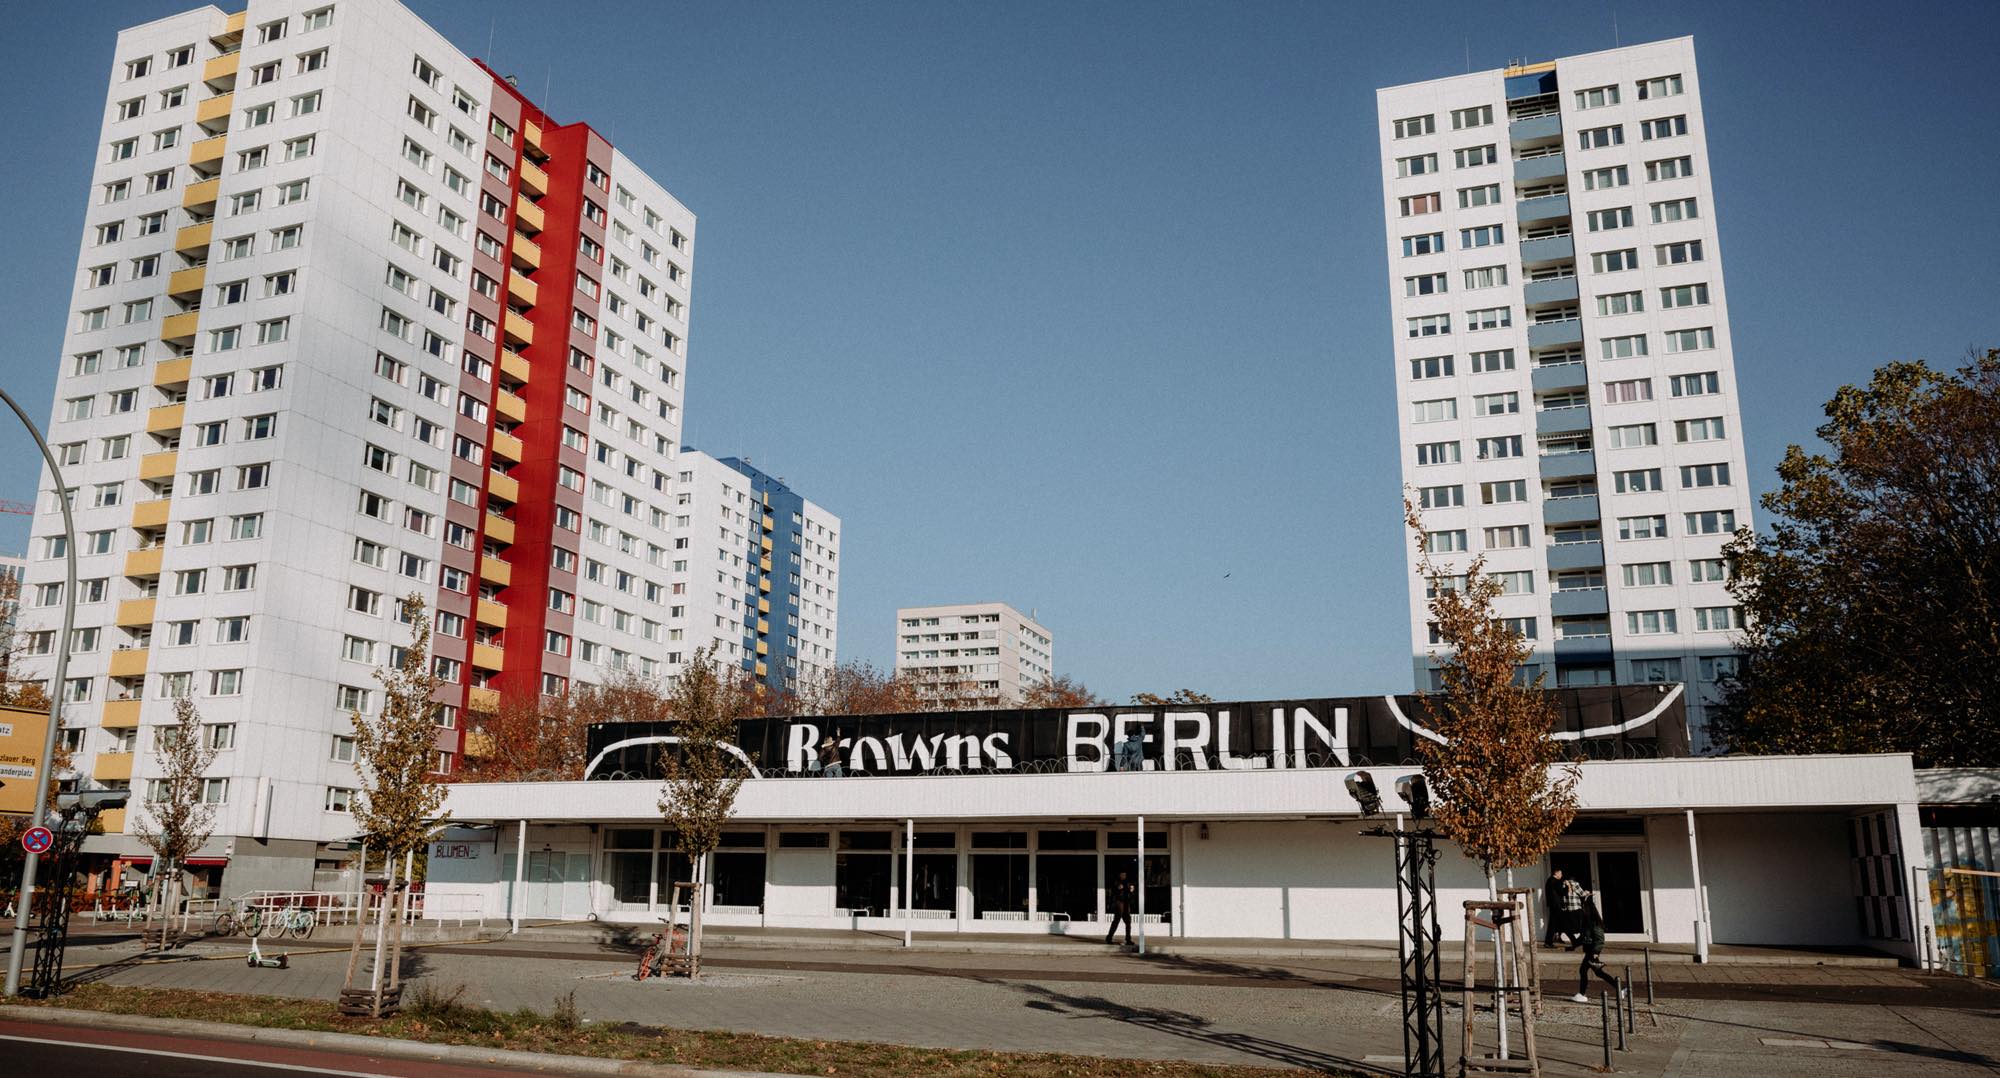 Browns Berlin facade in Mitte